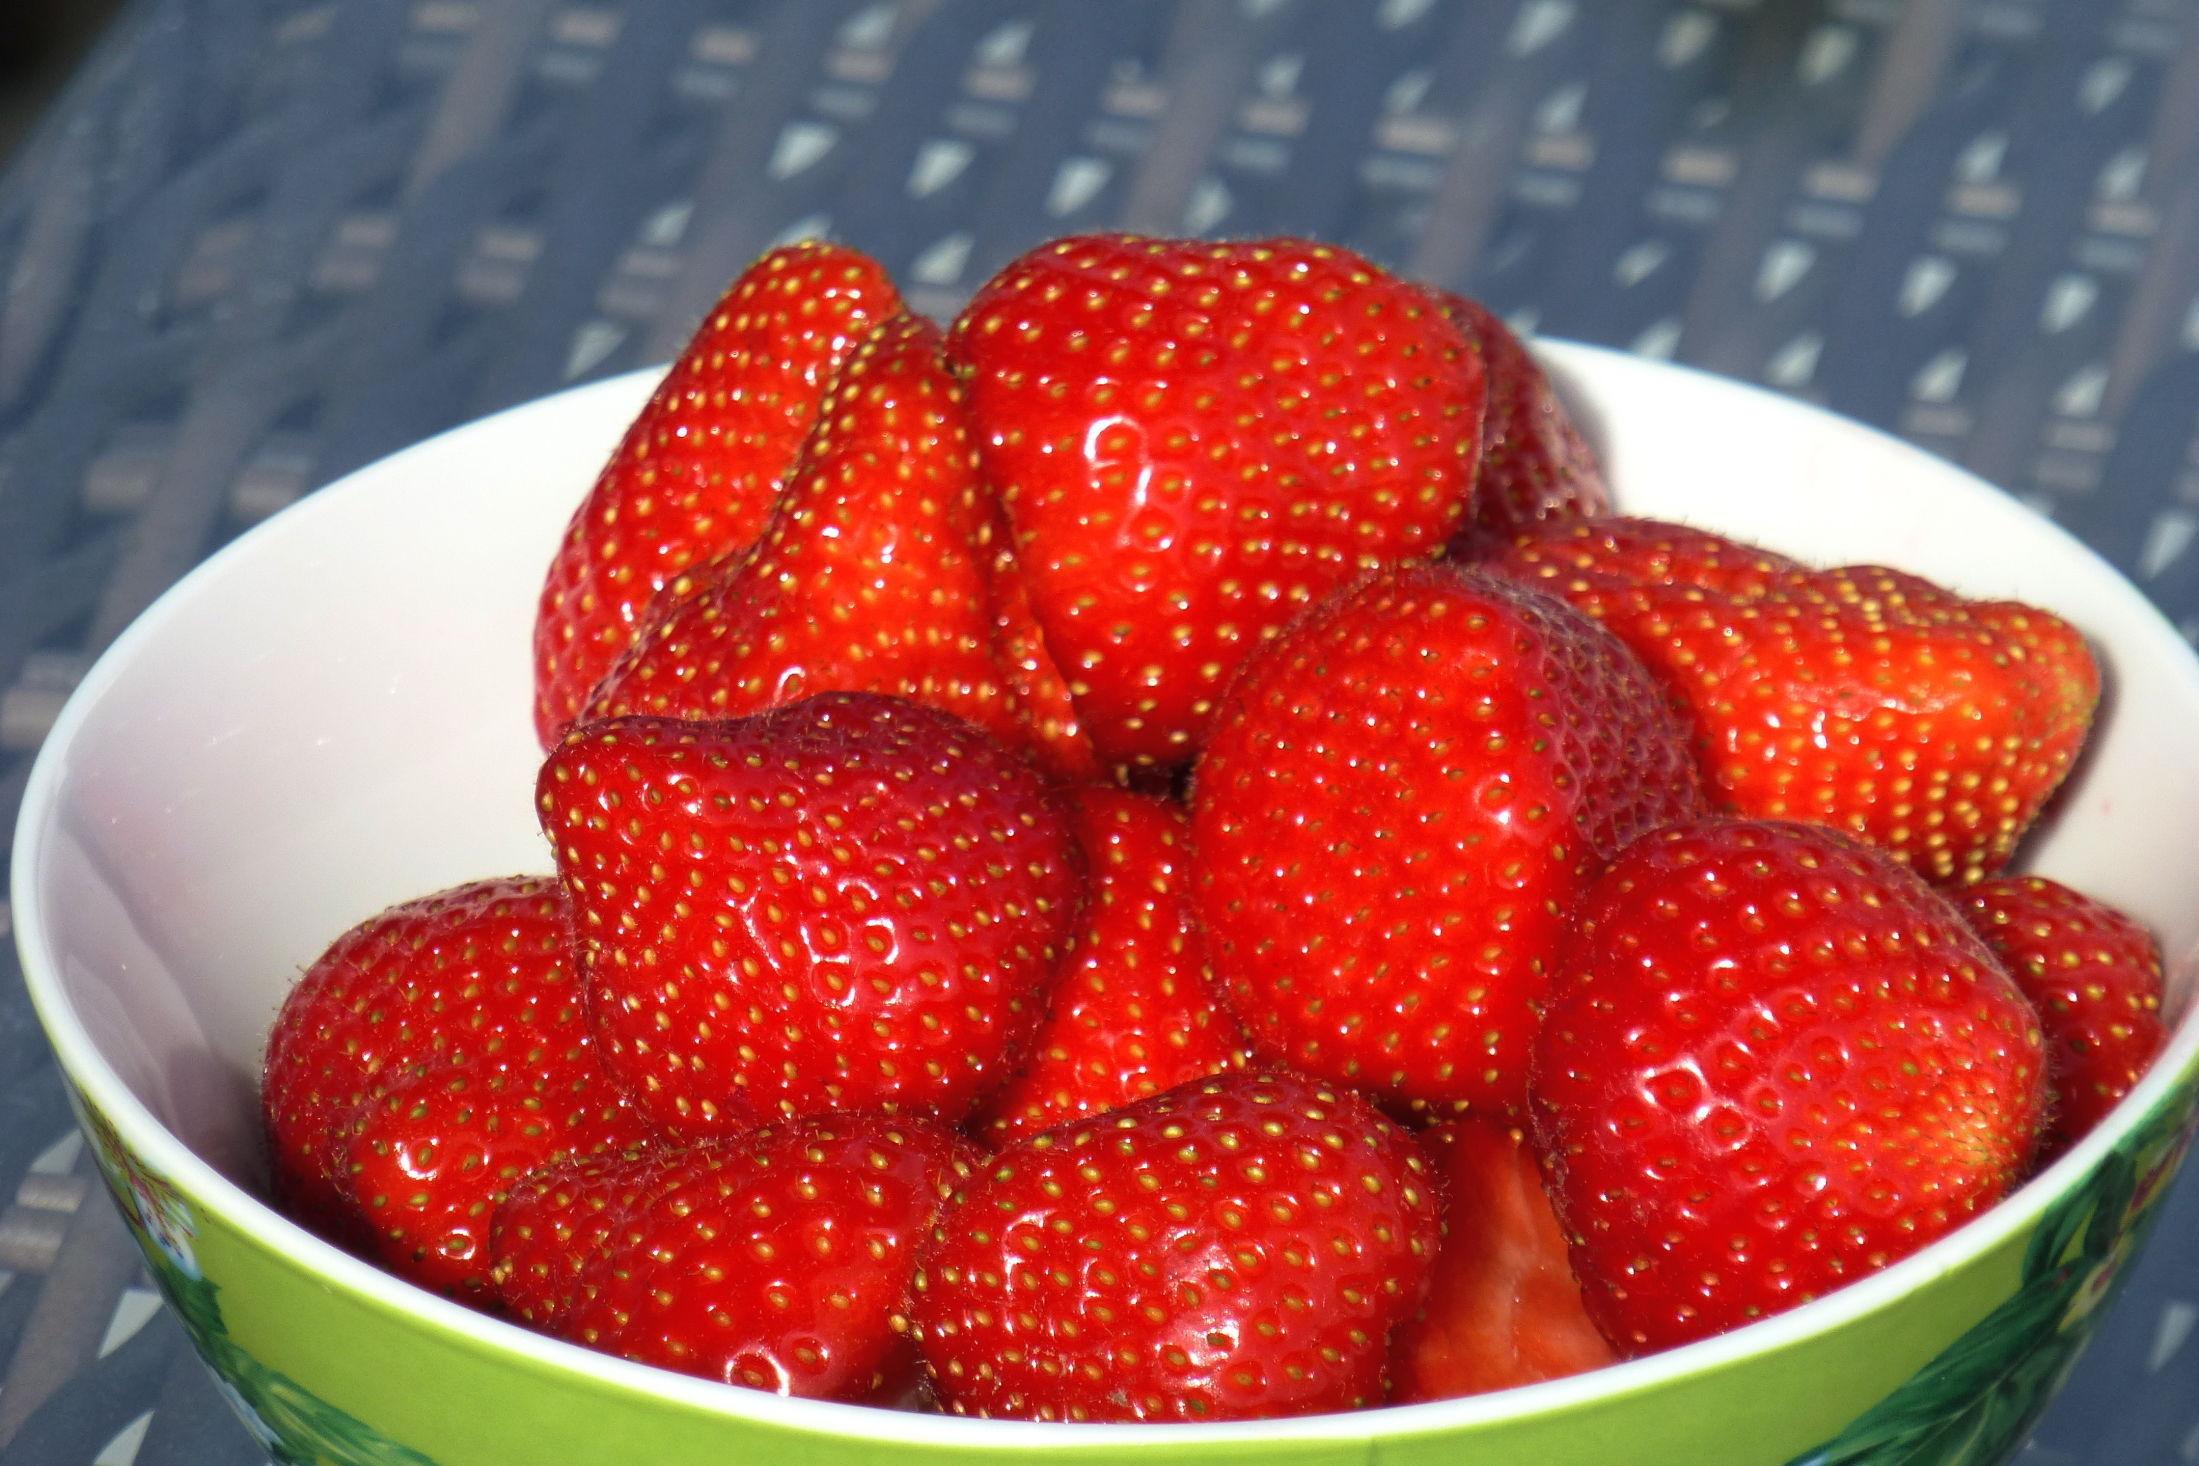 HERLIG SØDME: Sommeren er ikke det samme uten smaken av søte jordbær. Unngå derfor å ha dem i kjøleskapet for å få frem den gode smaken. Foto: Jan Ovind/VG